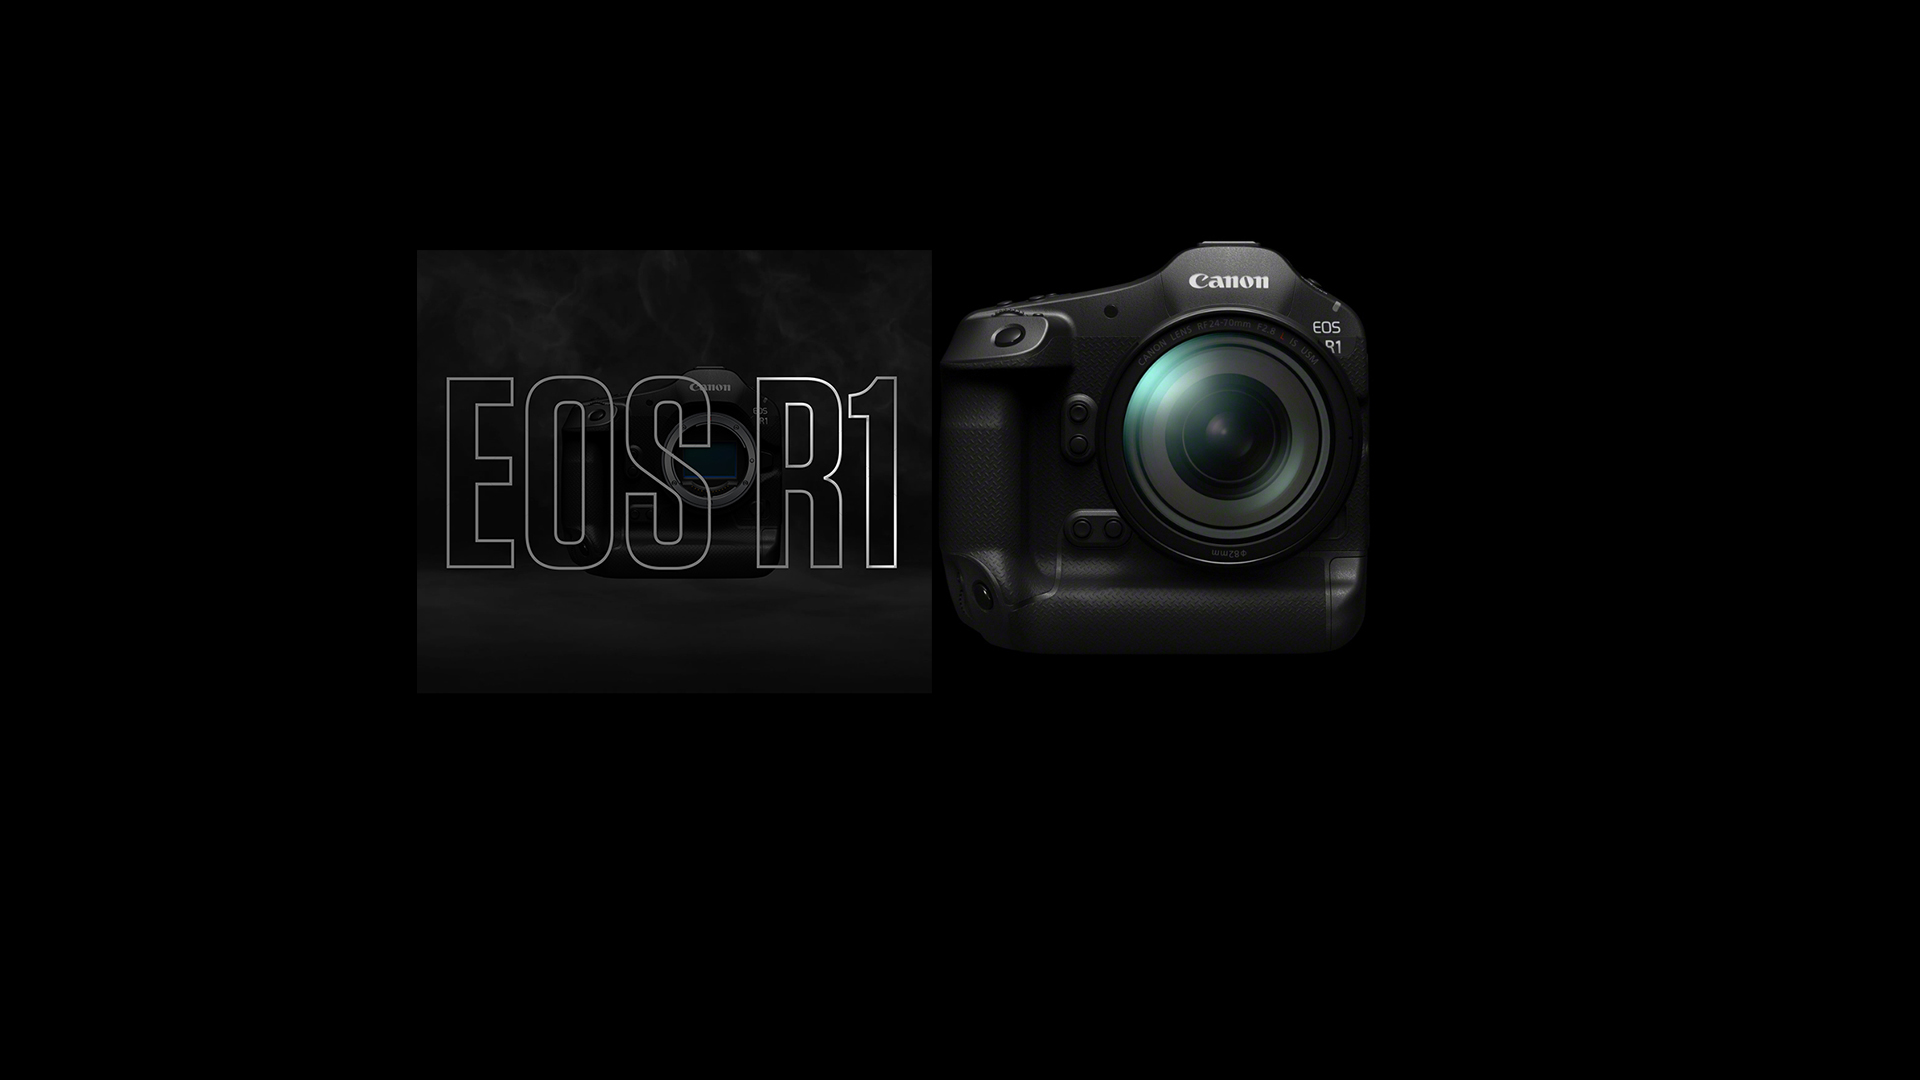 Canon EOS R Sistemi’nin ilk amiral gemisi ürünü   EOS R1 geliyor